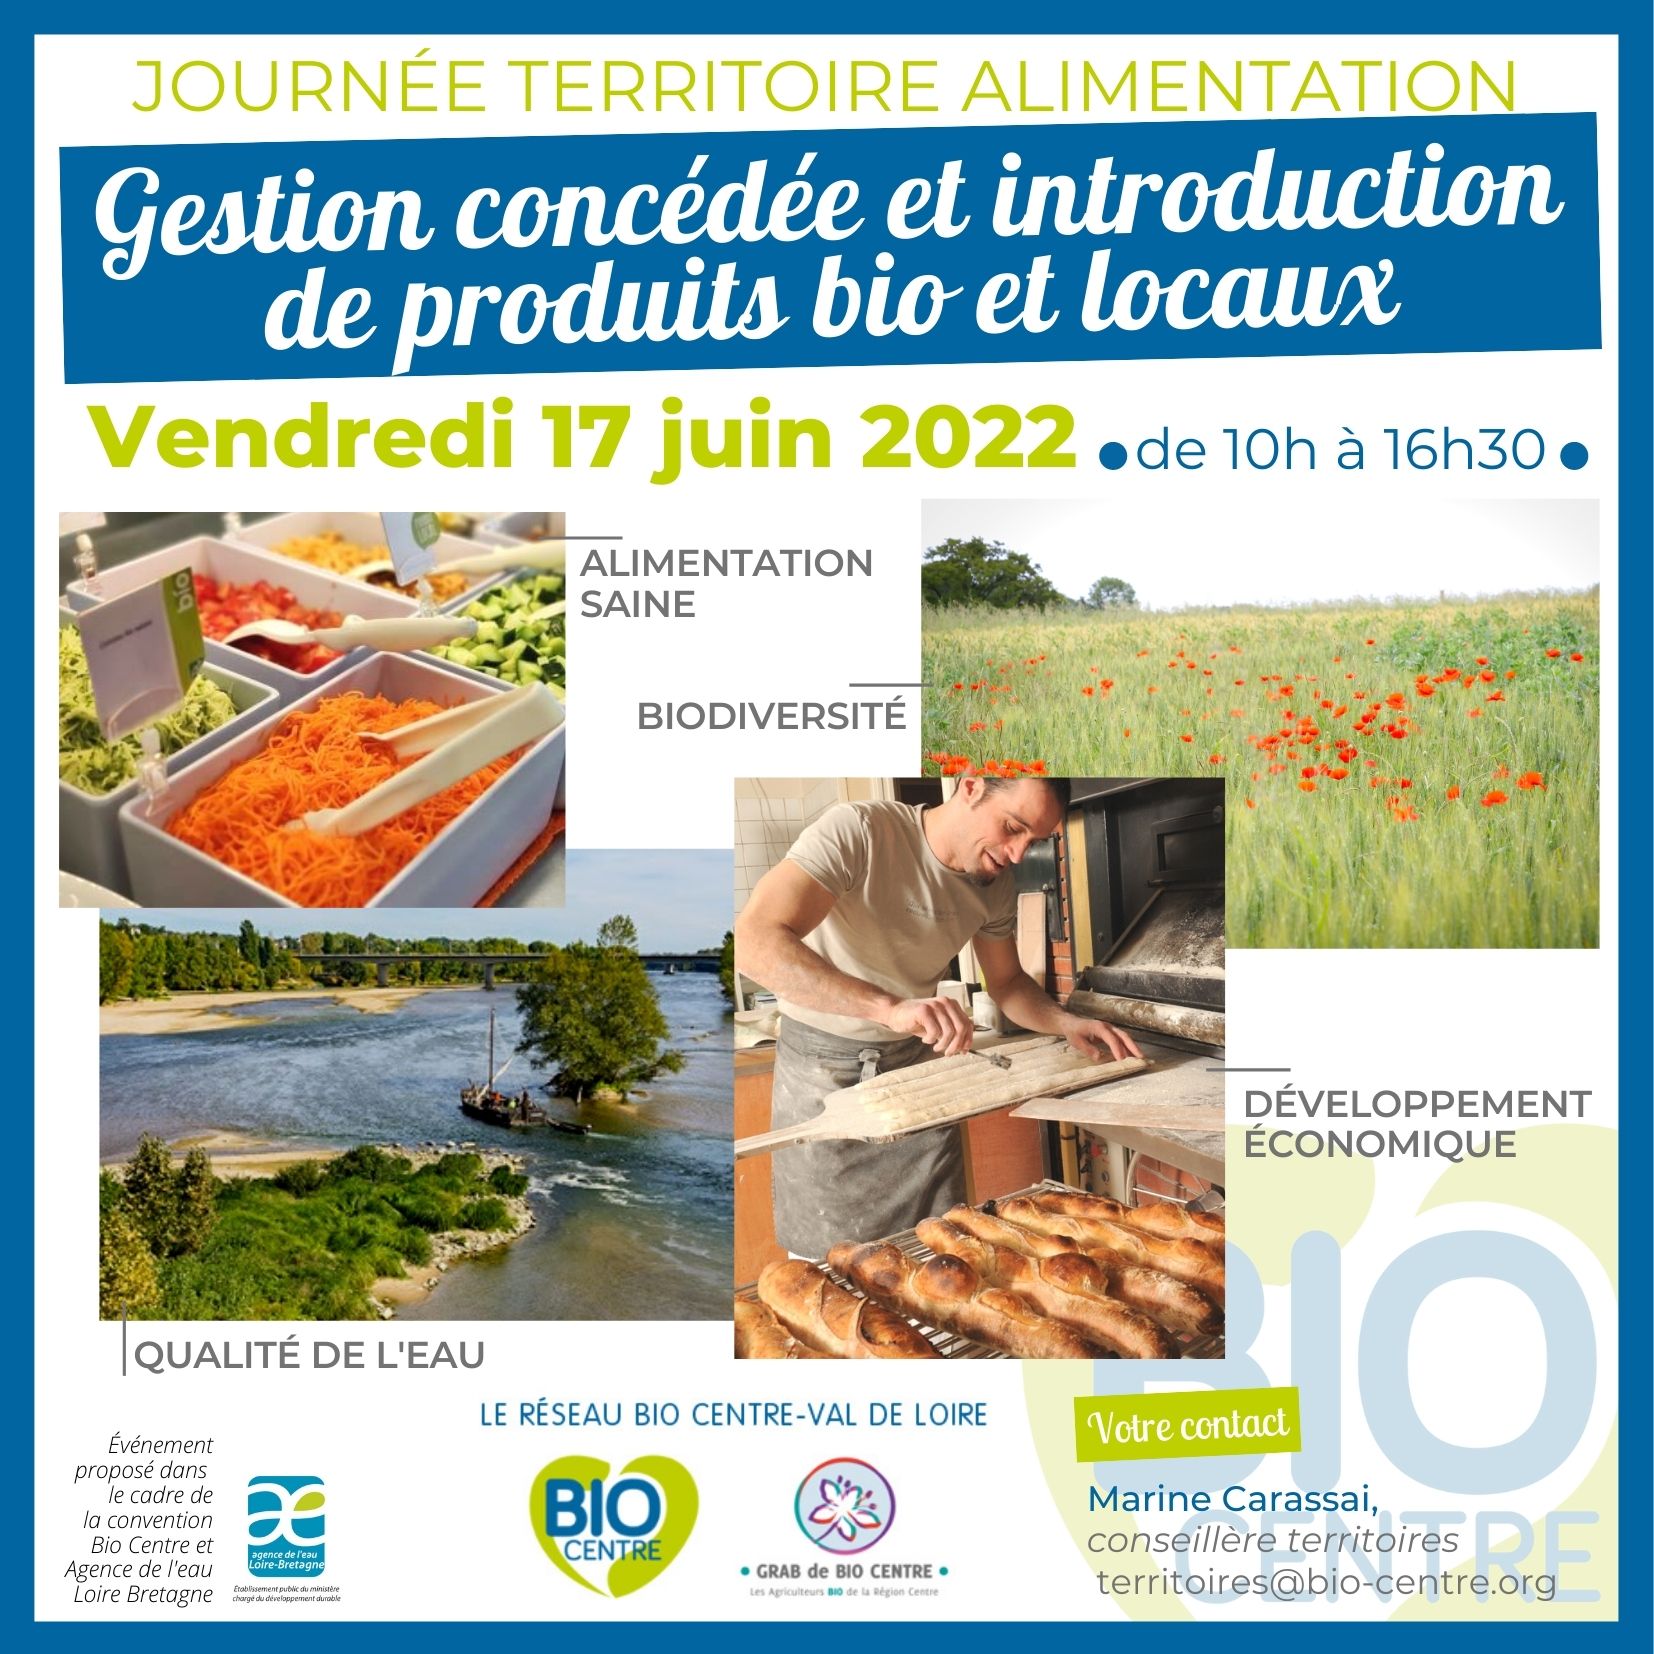 Journée Territoire Alimentation : Gestion concédée et introduction des produits bio